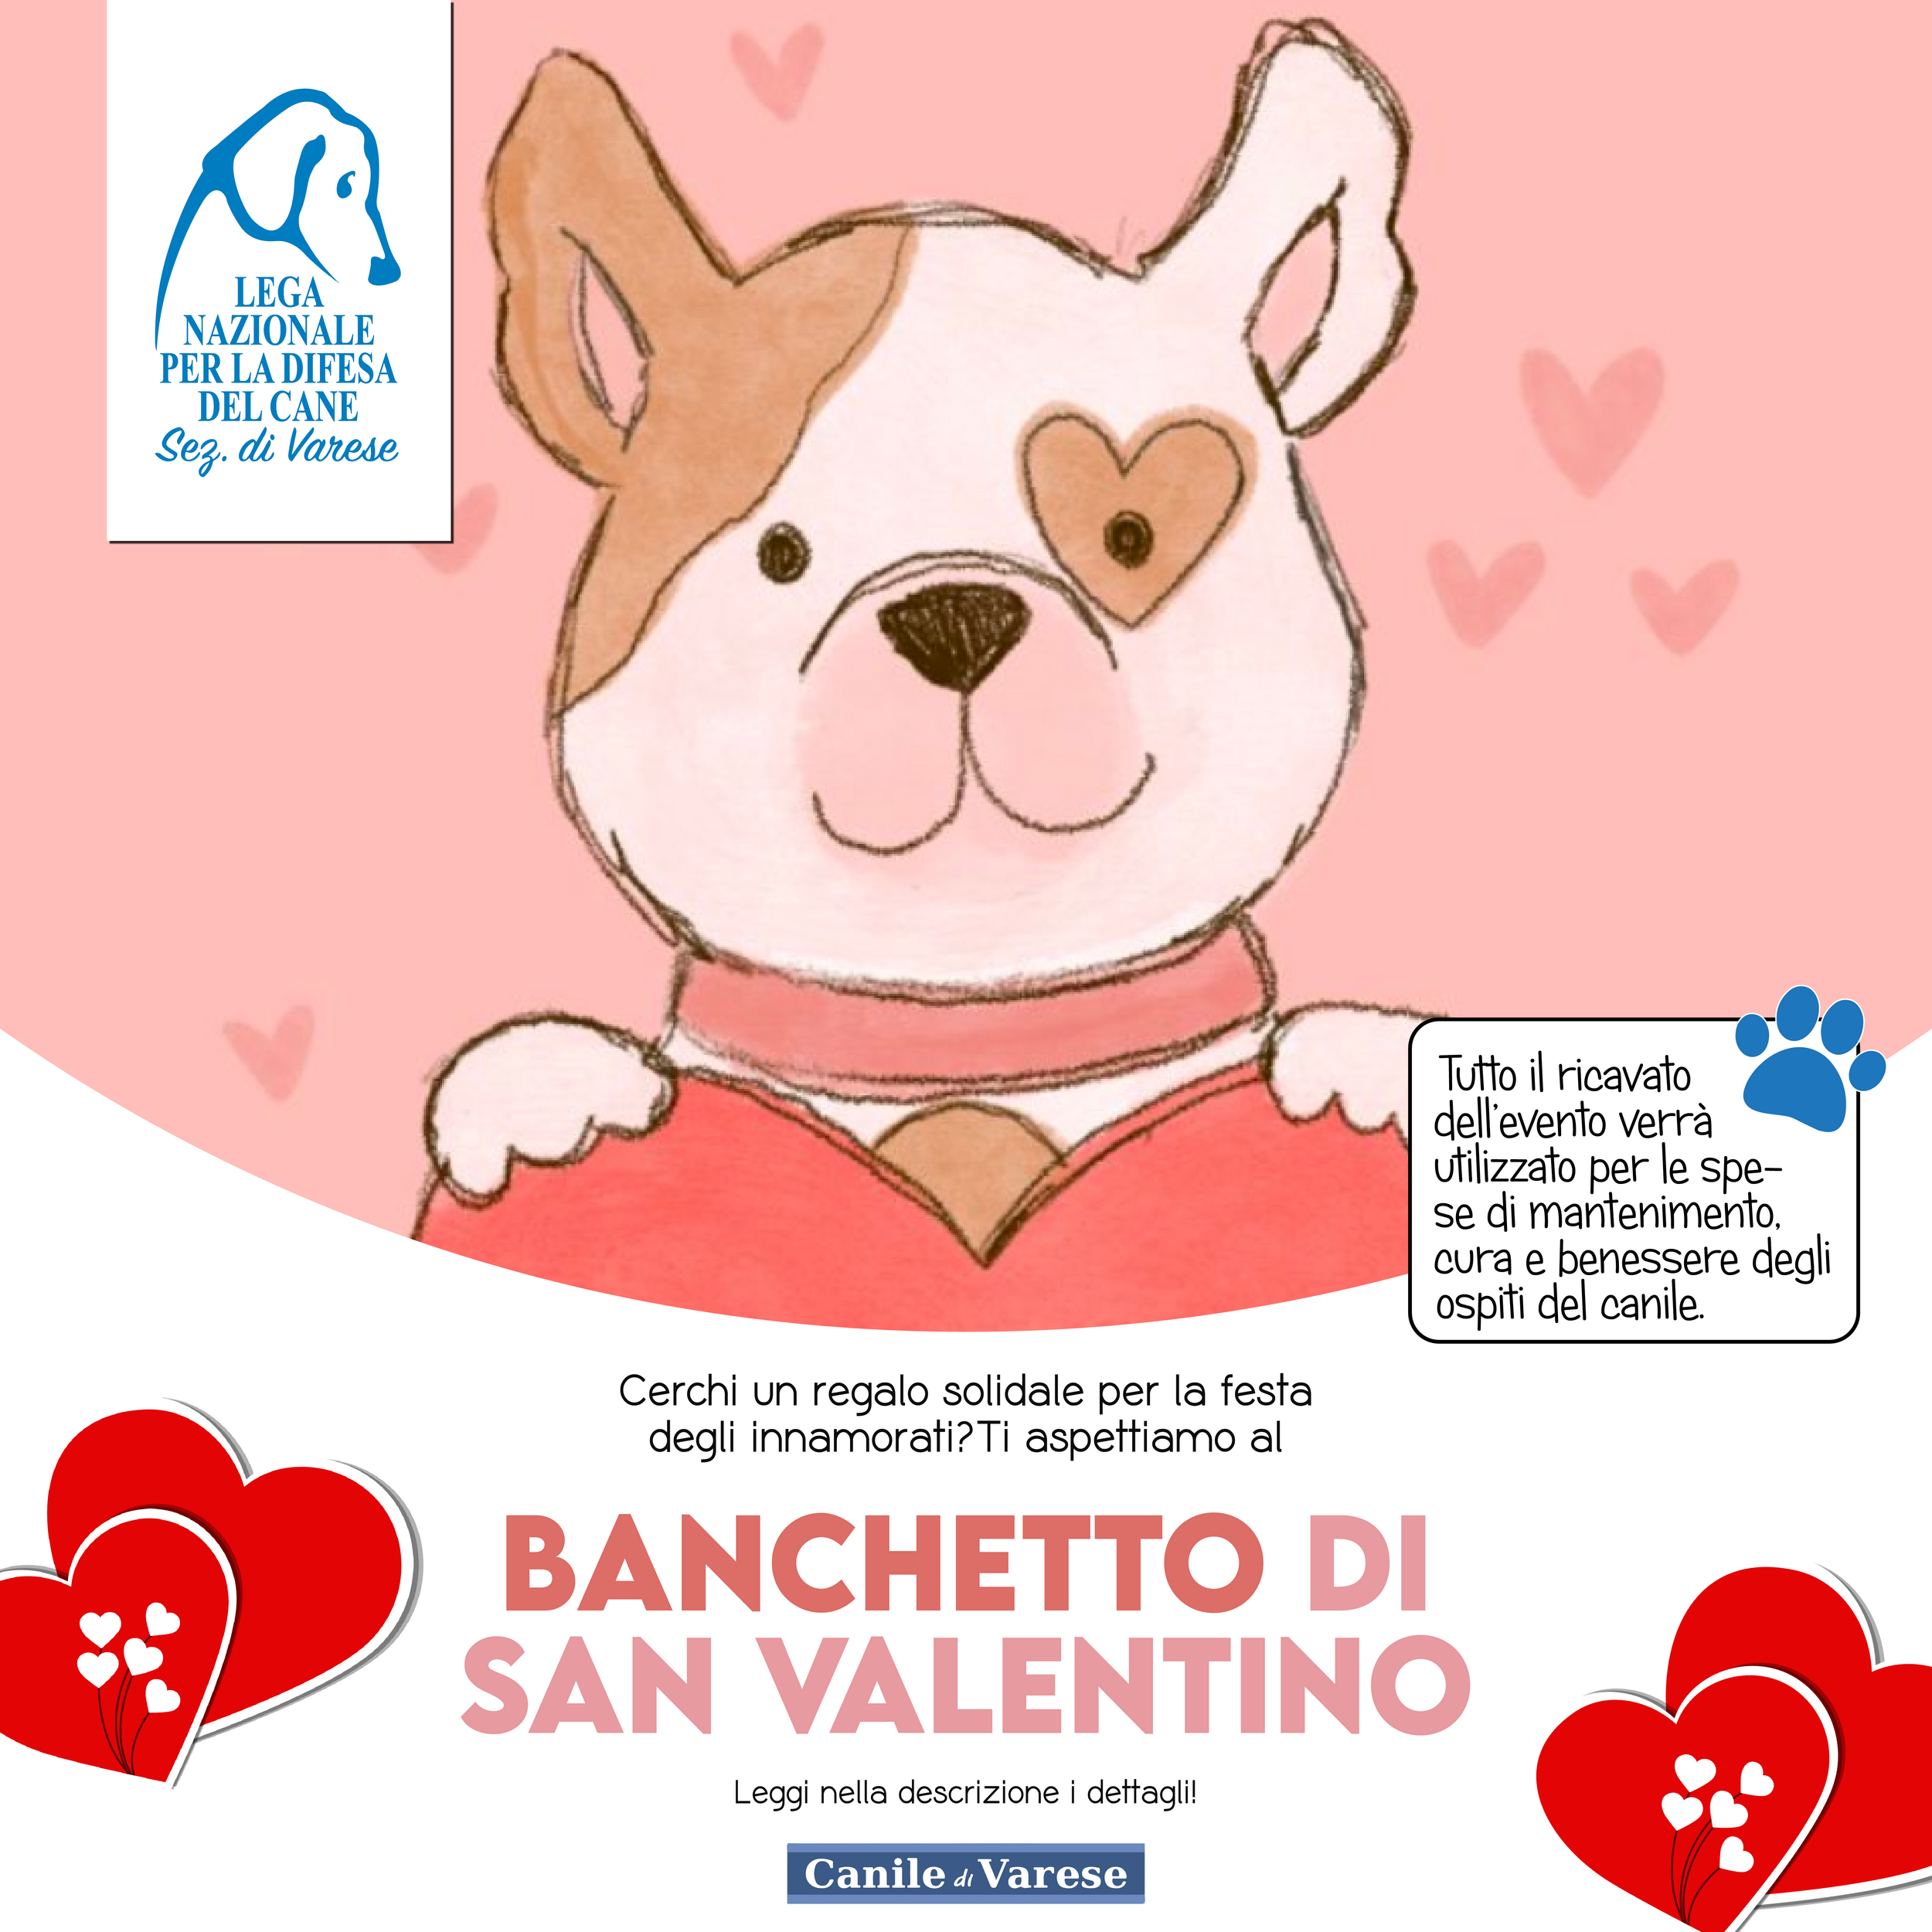 san valentino canile varese banchetto solidale amore lega nazionale per la difesa del cane